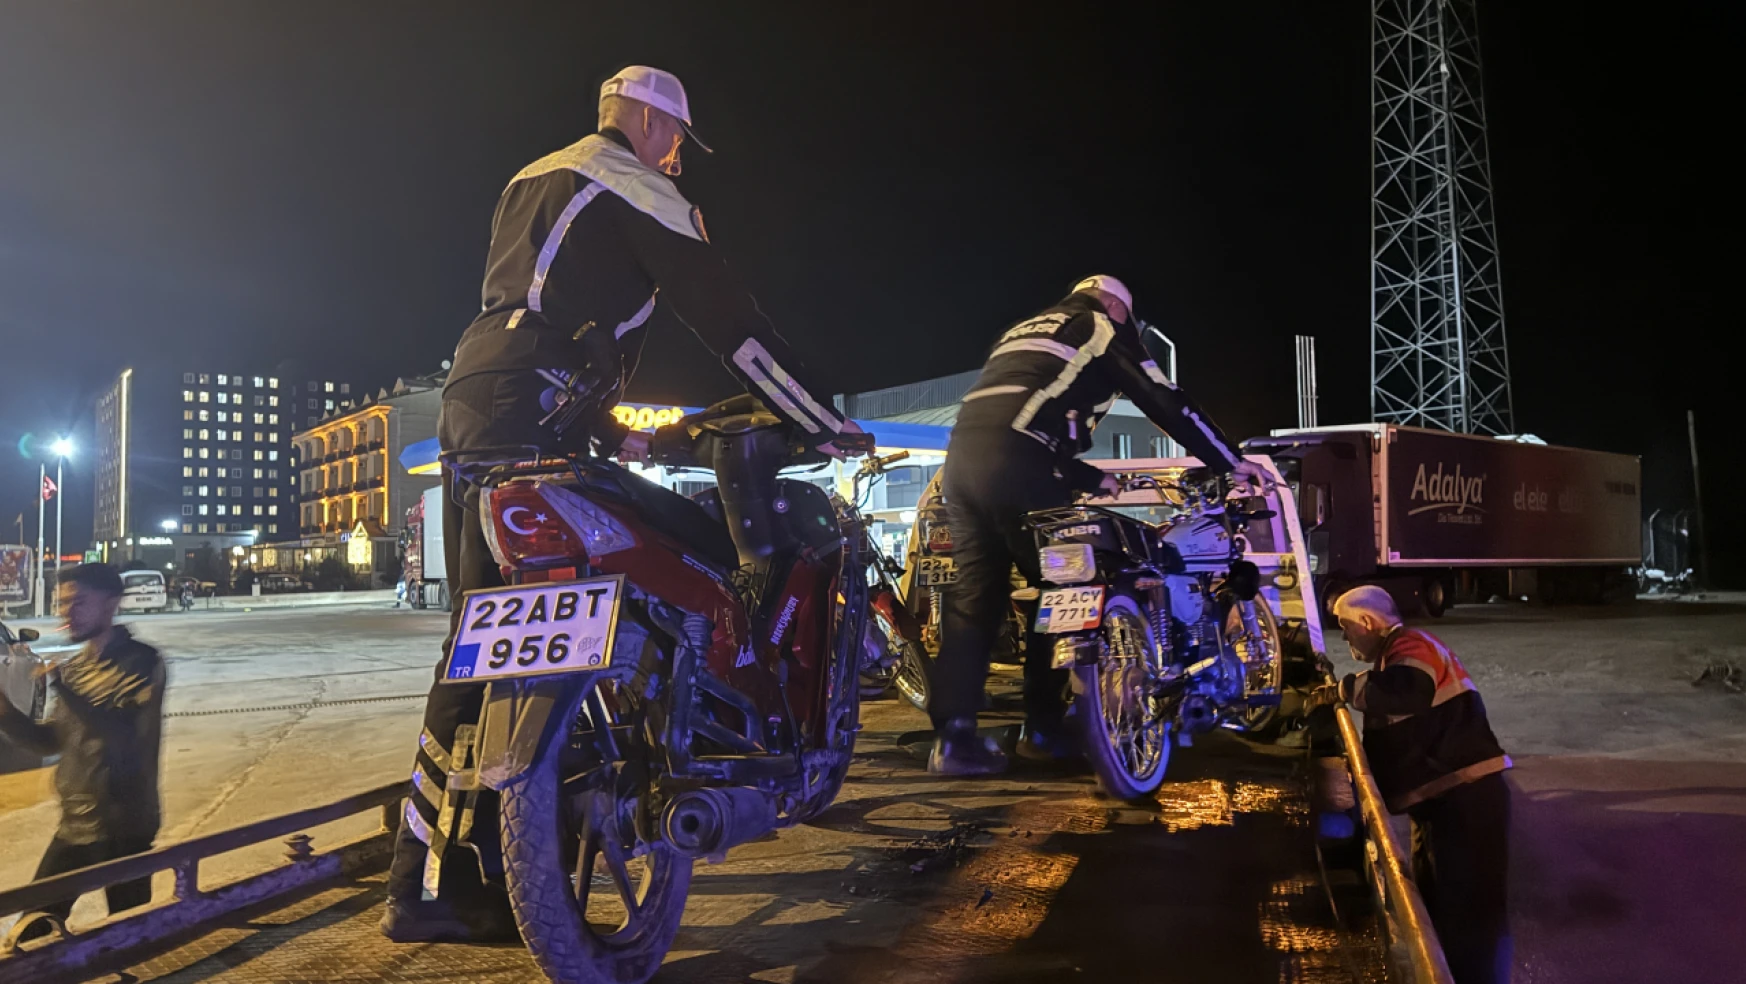 Edirne'de yarış yapan motosiklet sürücülerine 69 bin 460 lira ceza uygulandı